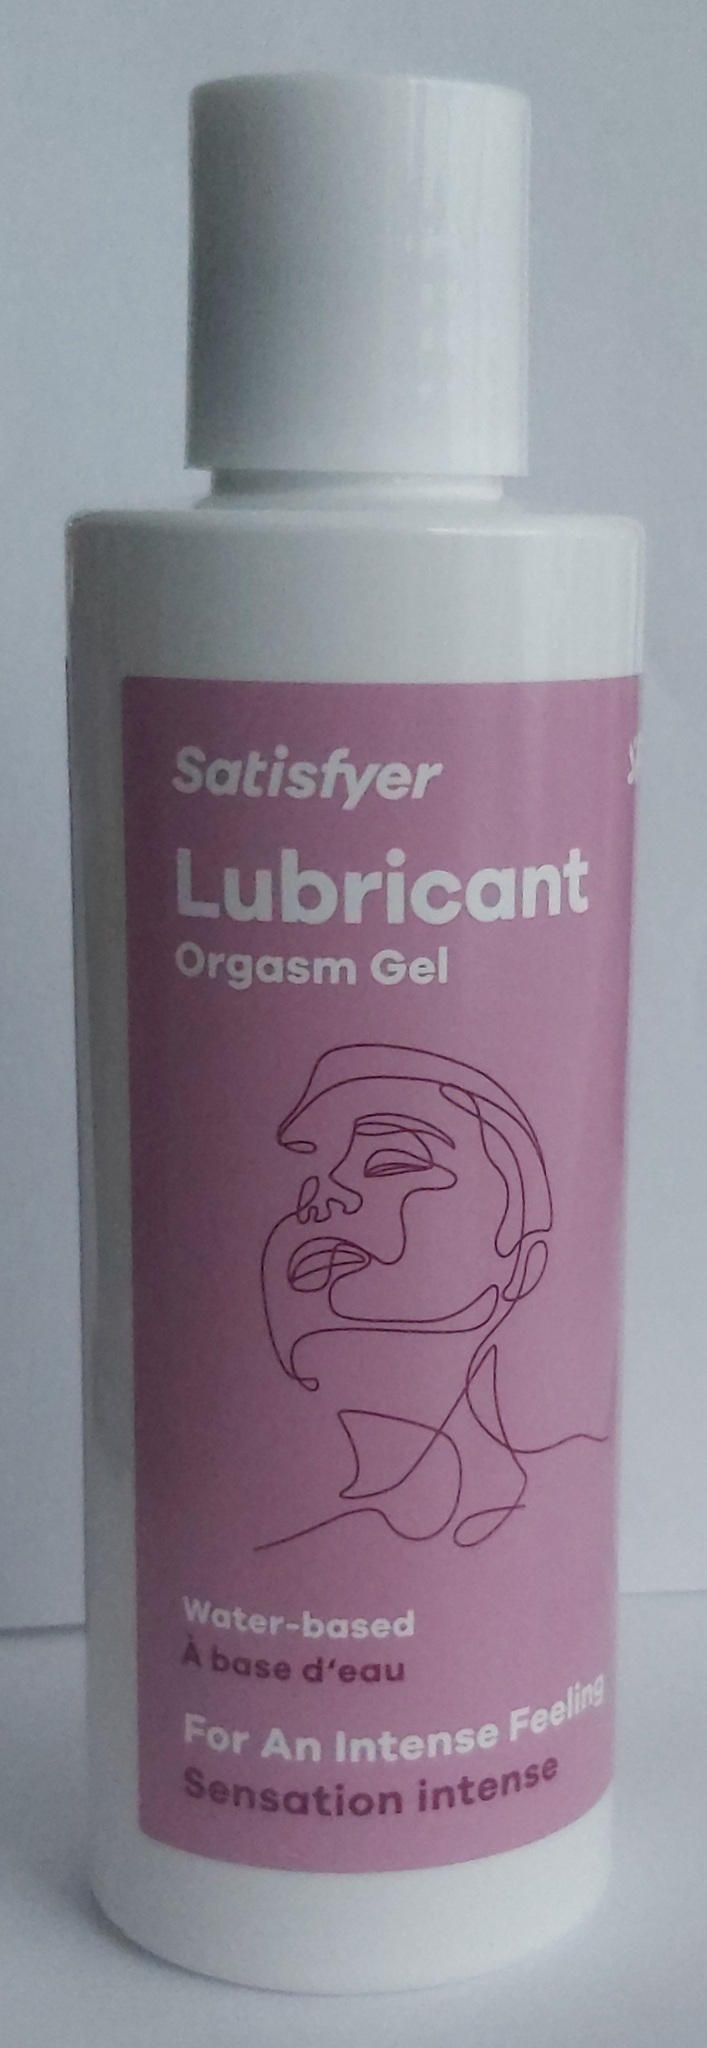 Lubricant Orgasm gel